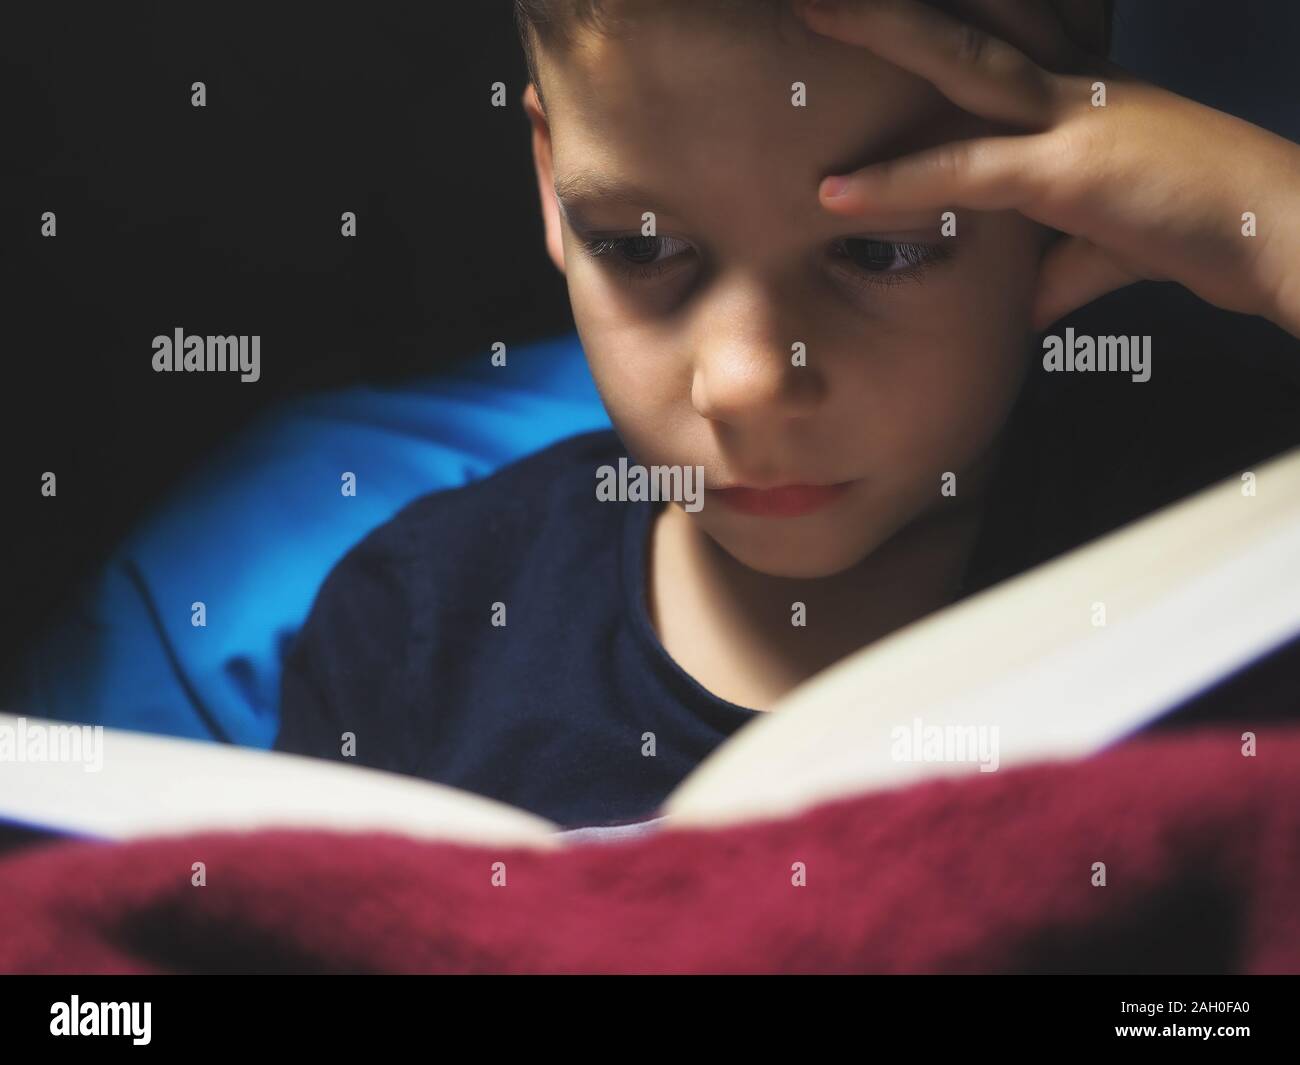 Petit enfant, 7 ans garçon lisant un livre à l'intérieur à dim spot light Banque D'Images